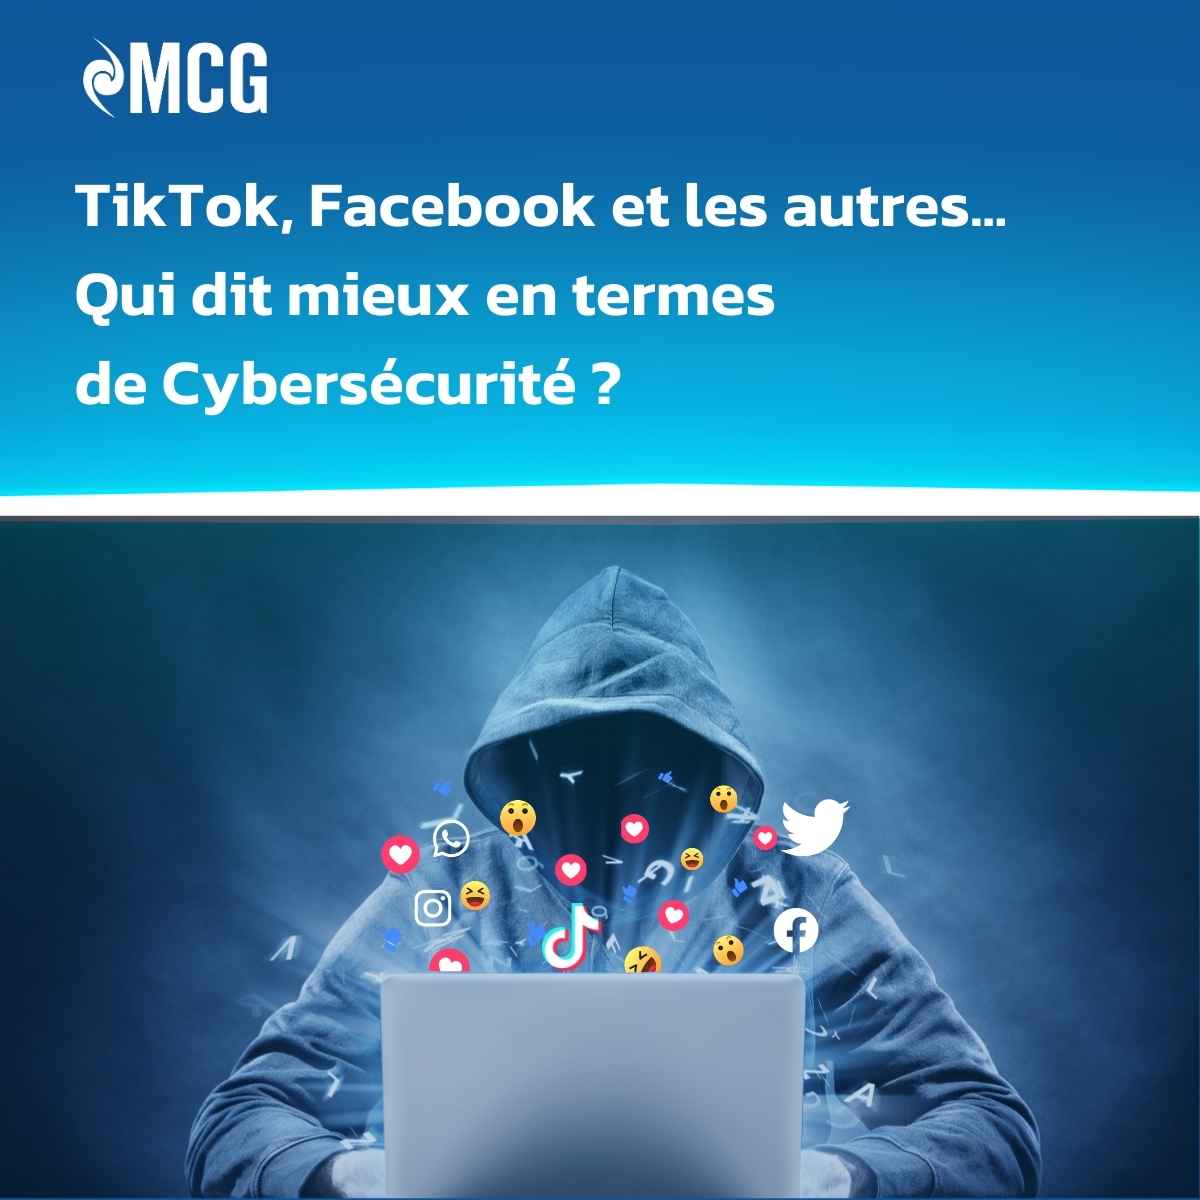 TikTok, Facebook, et les autres... Qui dit mieux en termes de cybersécurité ?